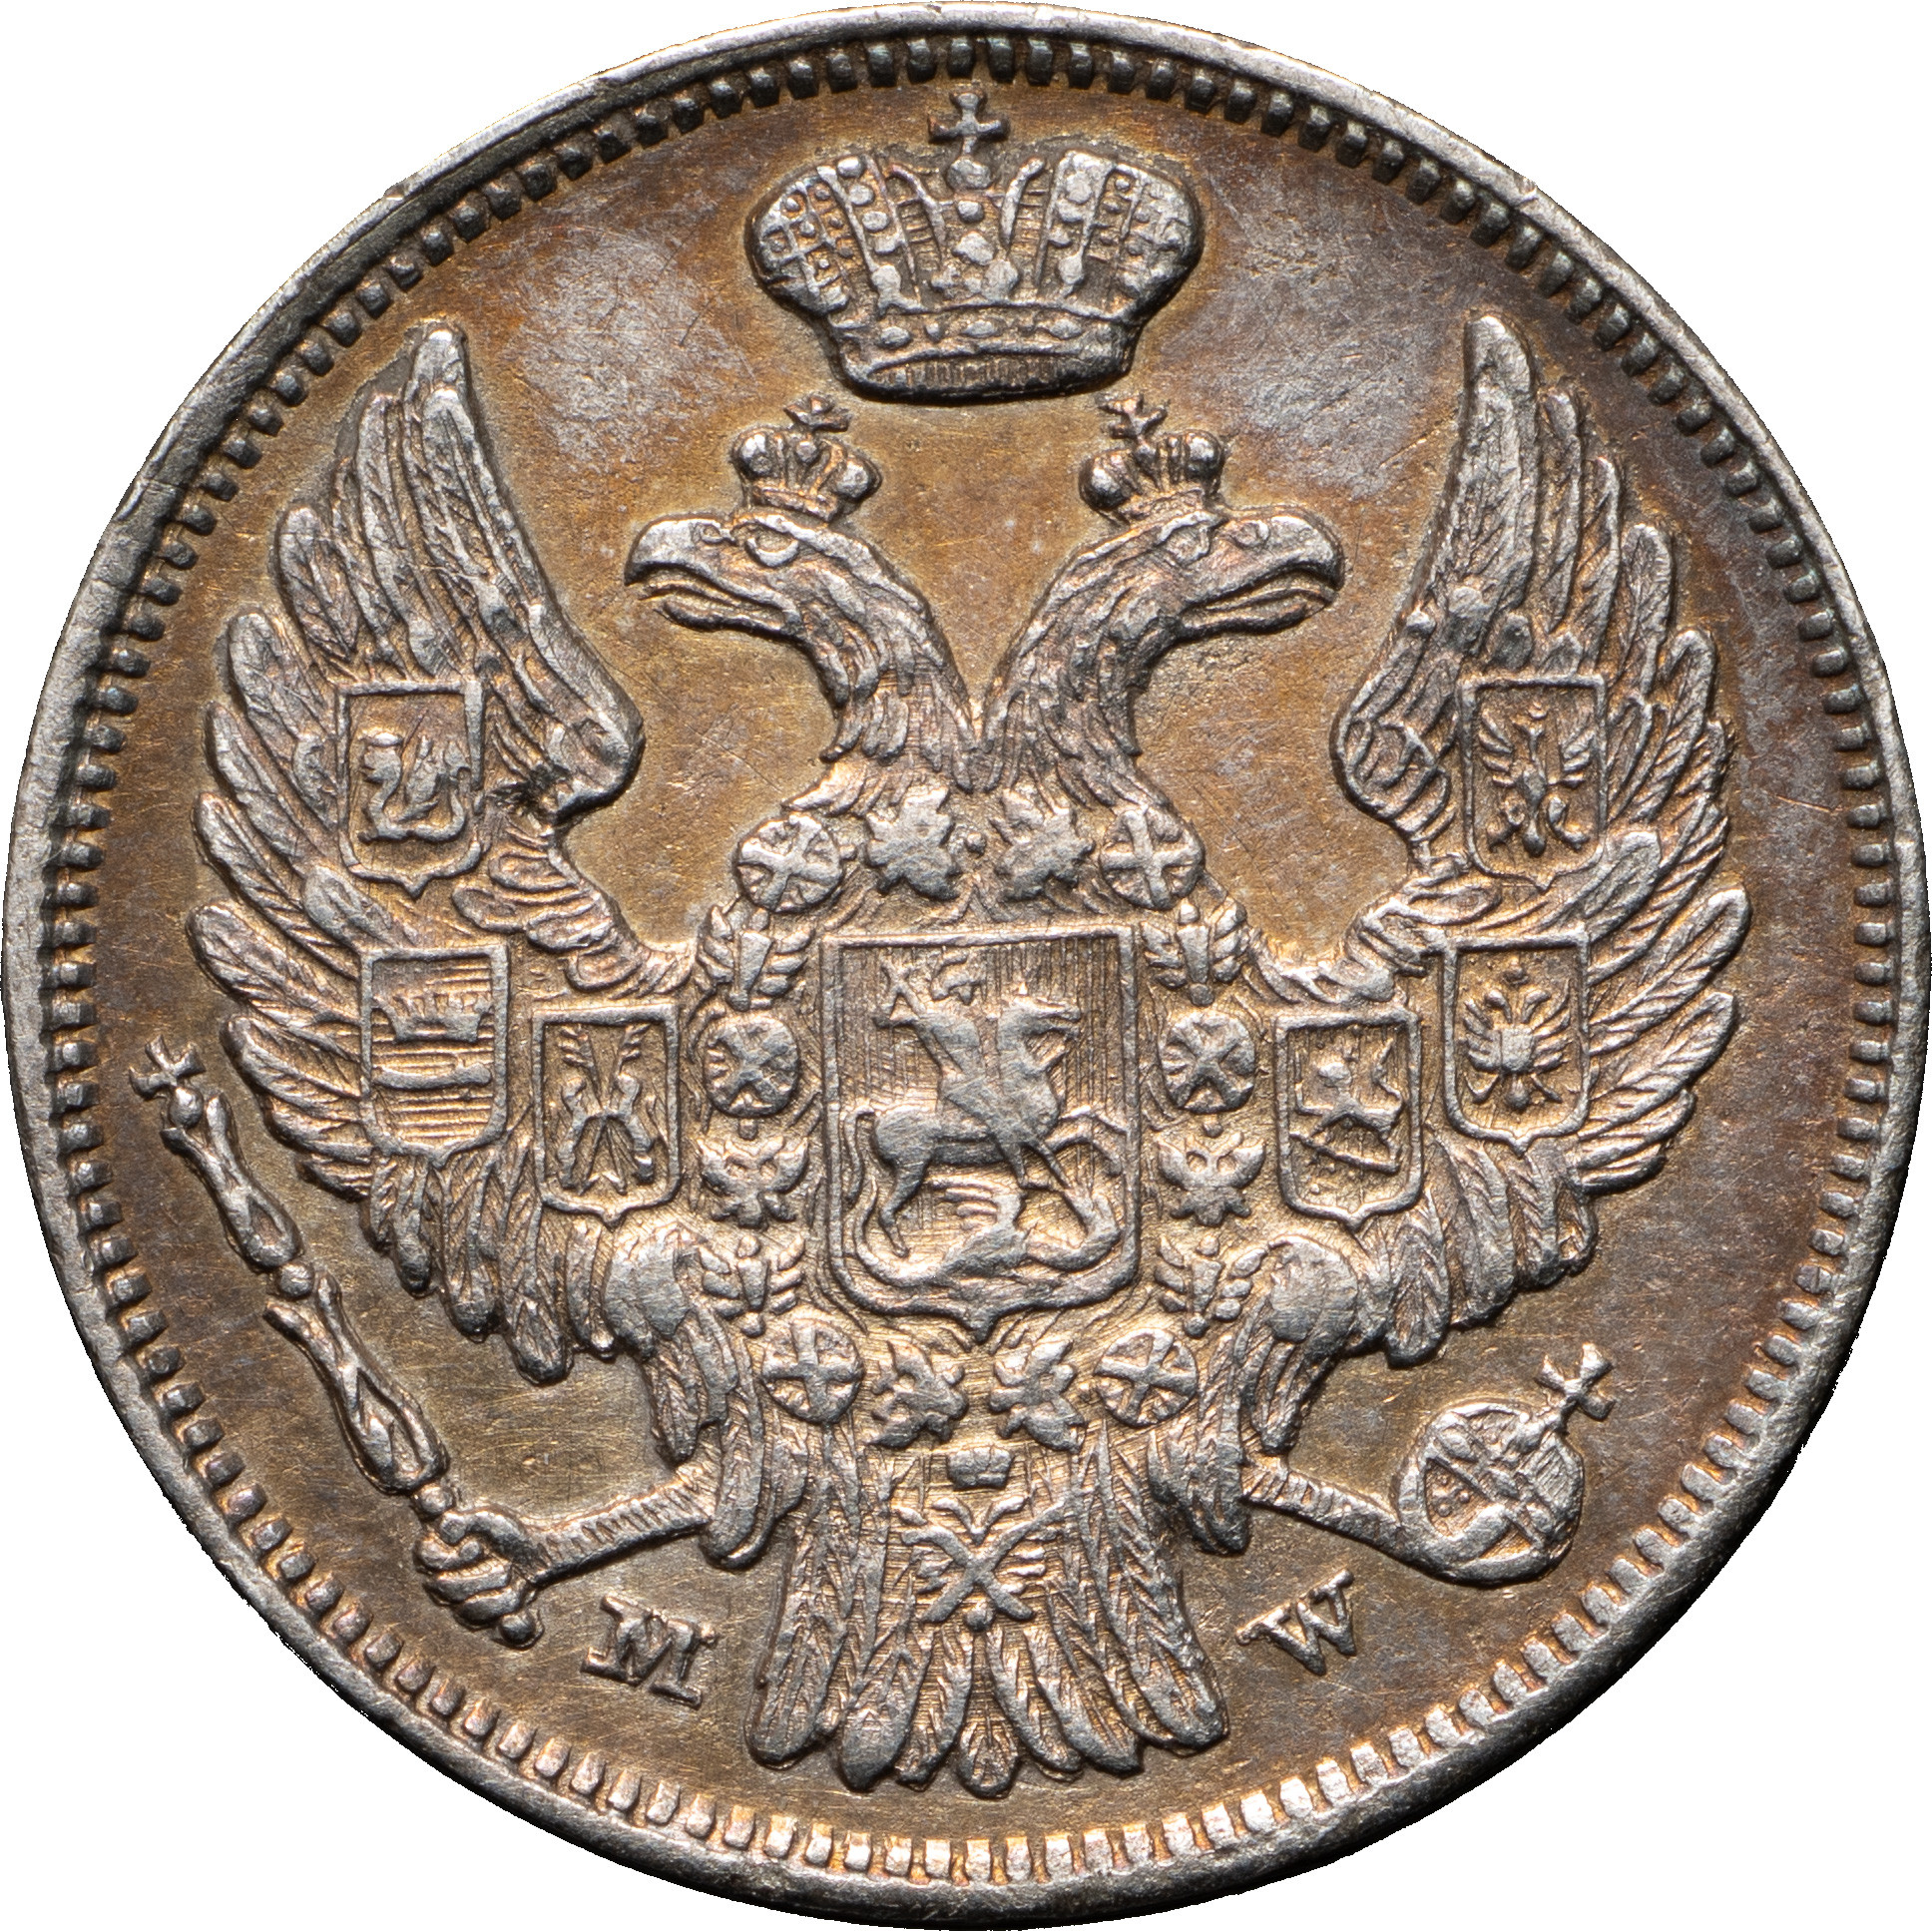 15 копеек - 1 злотый 1837 года